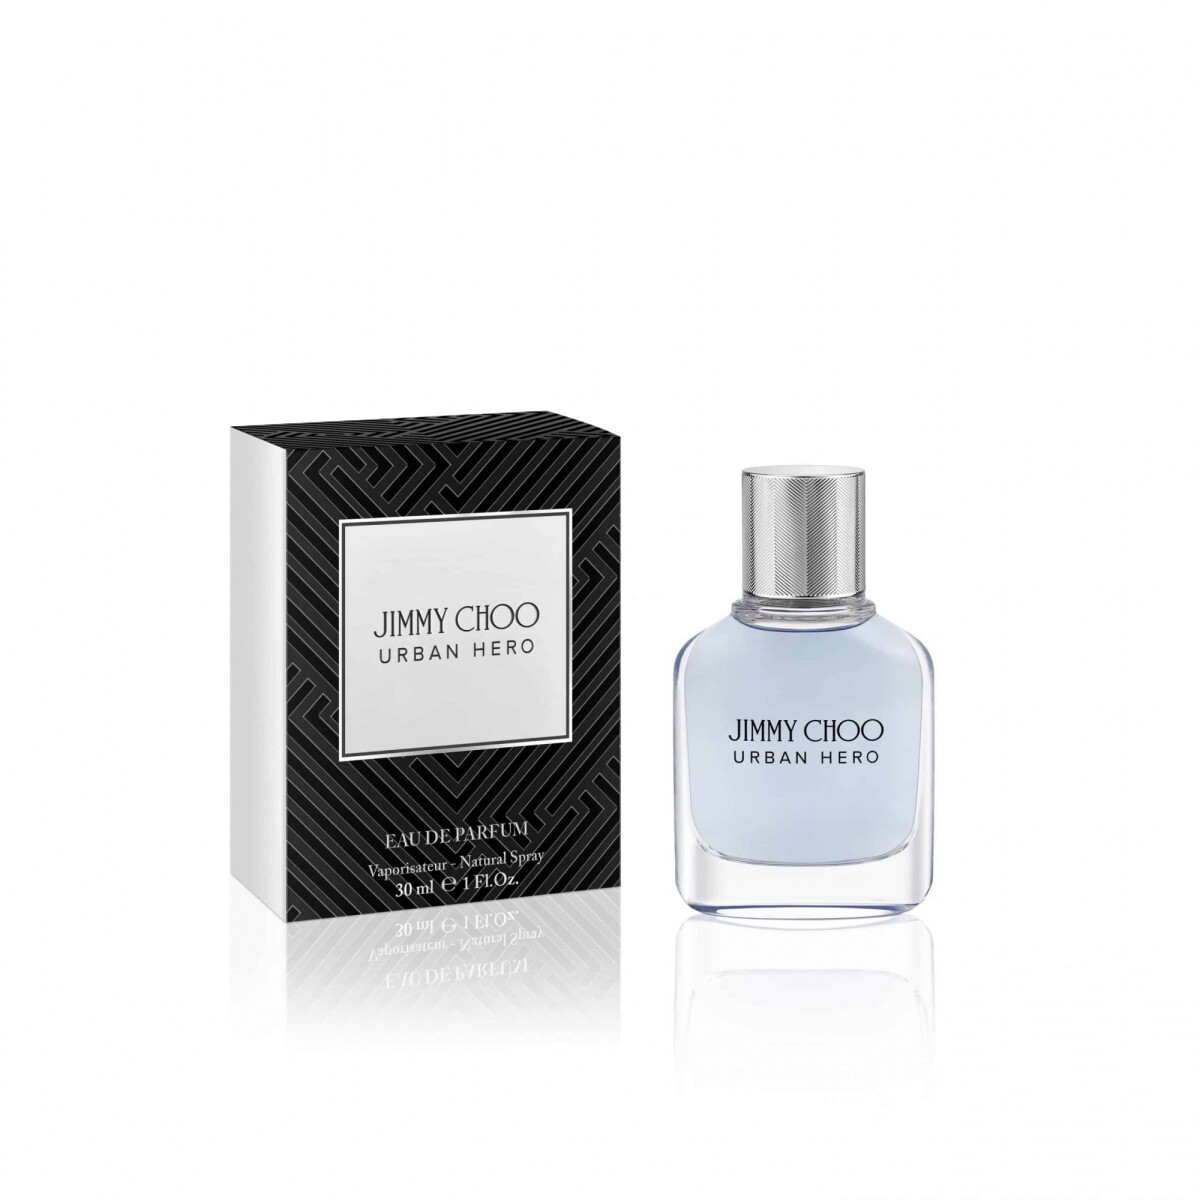 Perfume Jimmy Choo J.Choo Urban Hero Edp 30 ml 